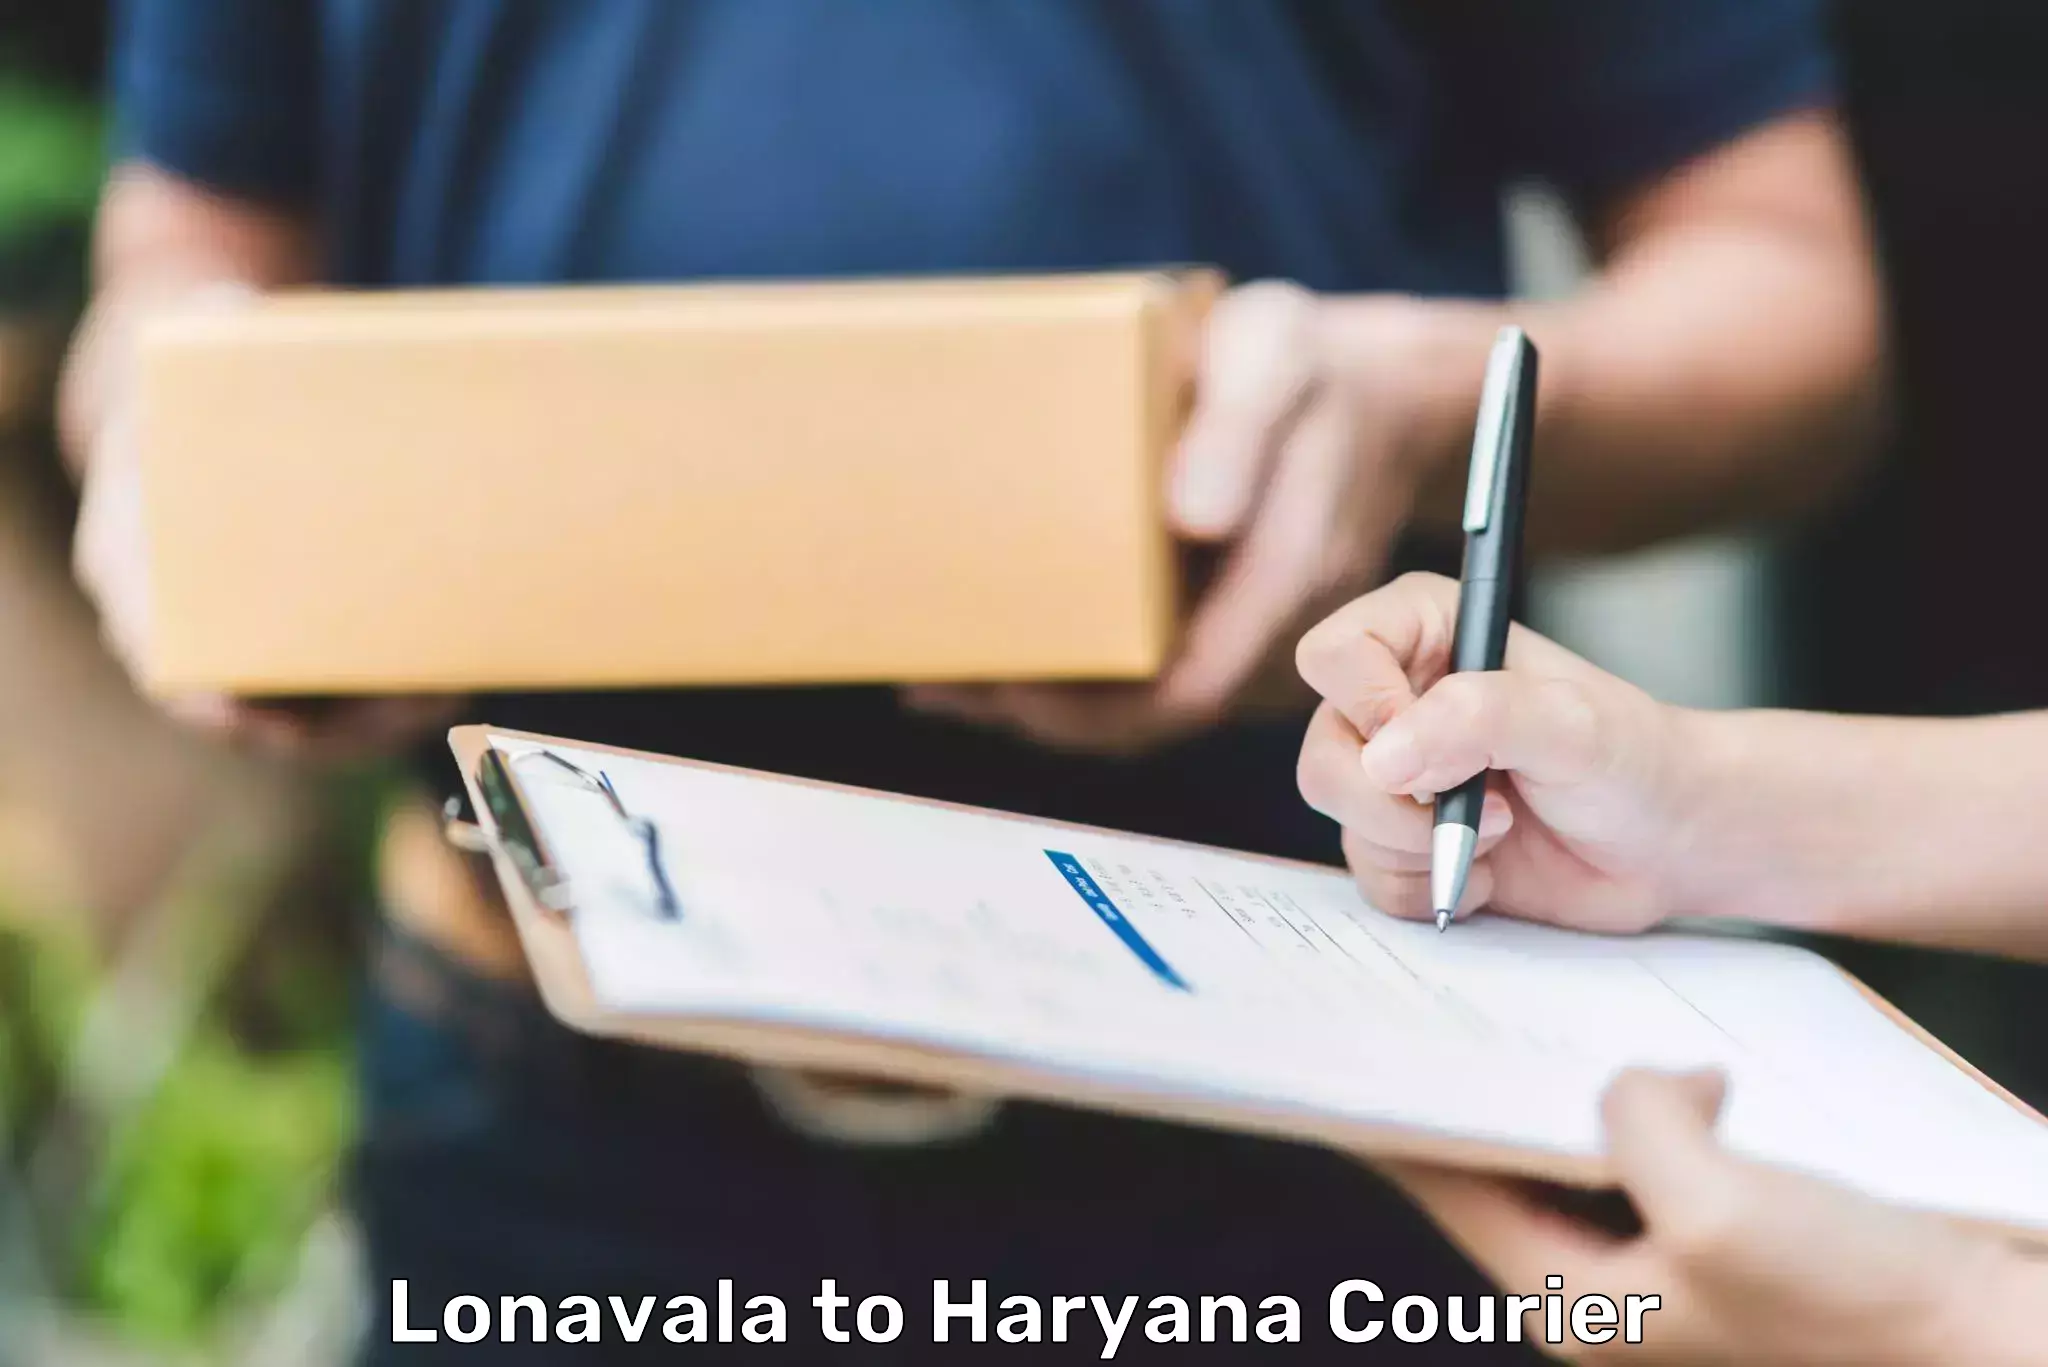 Lightweight courier Lonavala to NCR Haryana